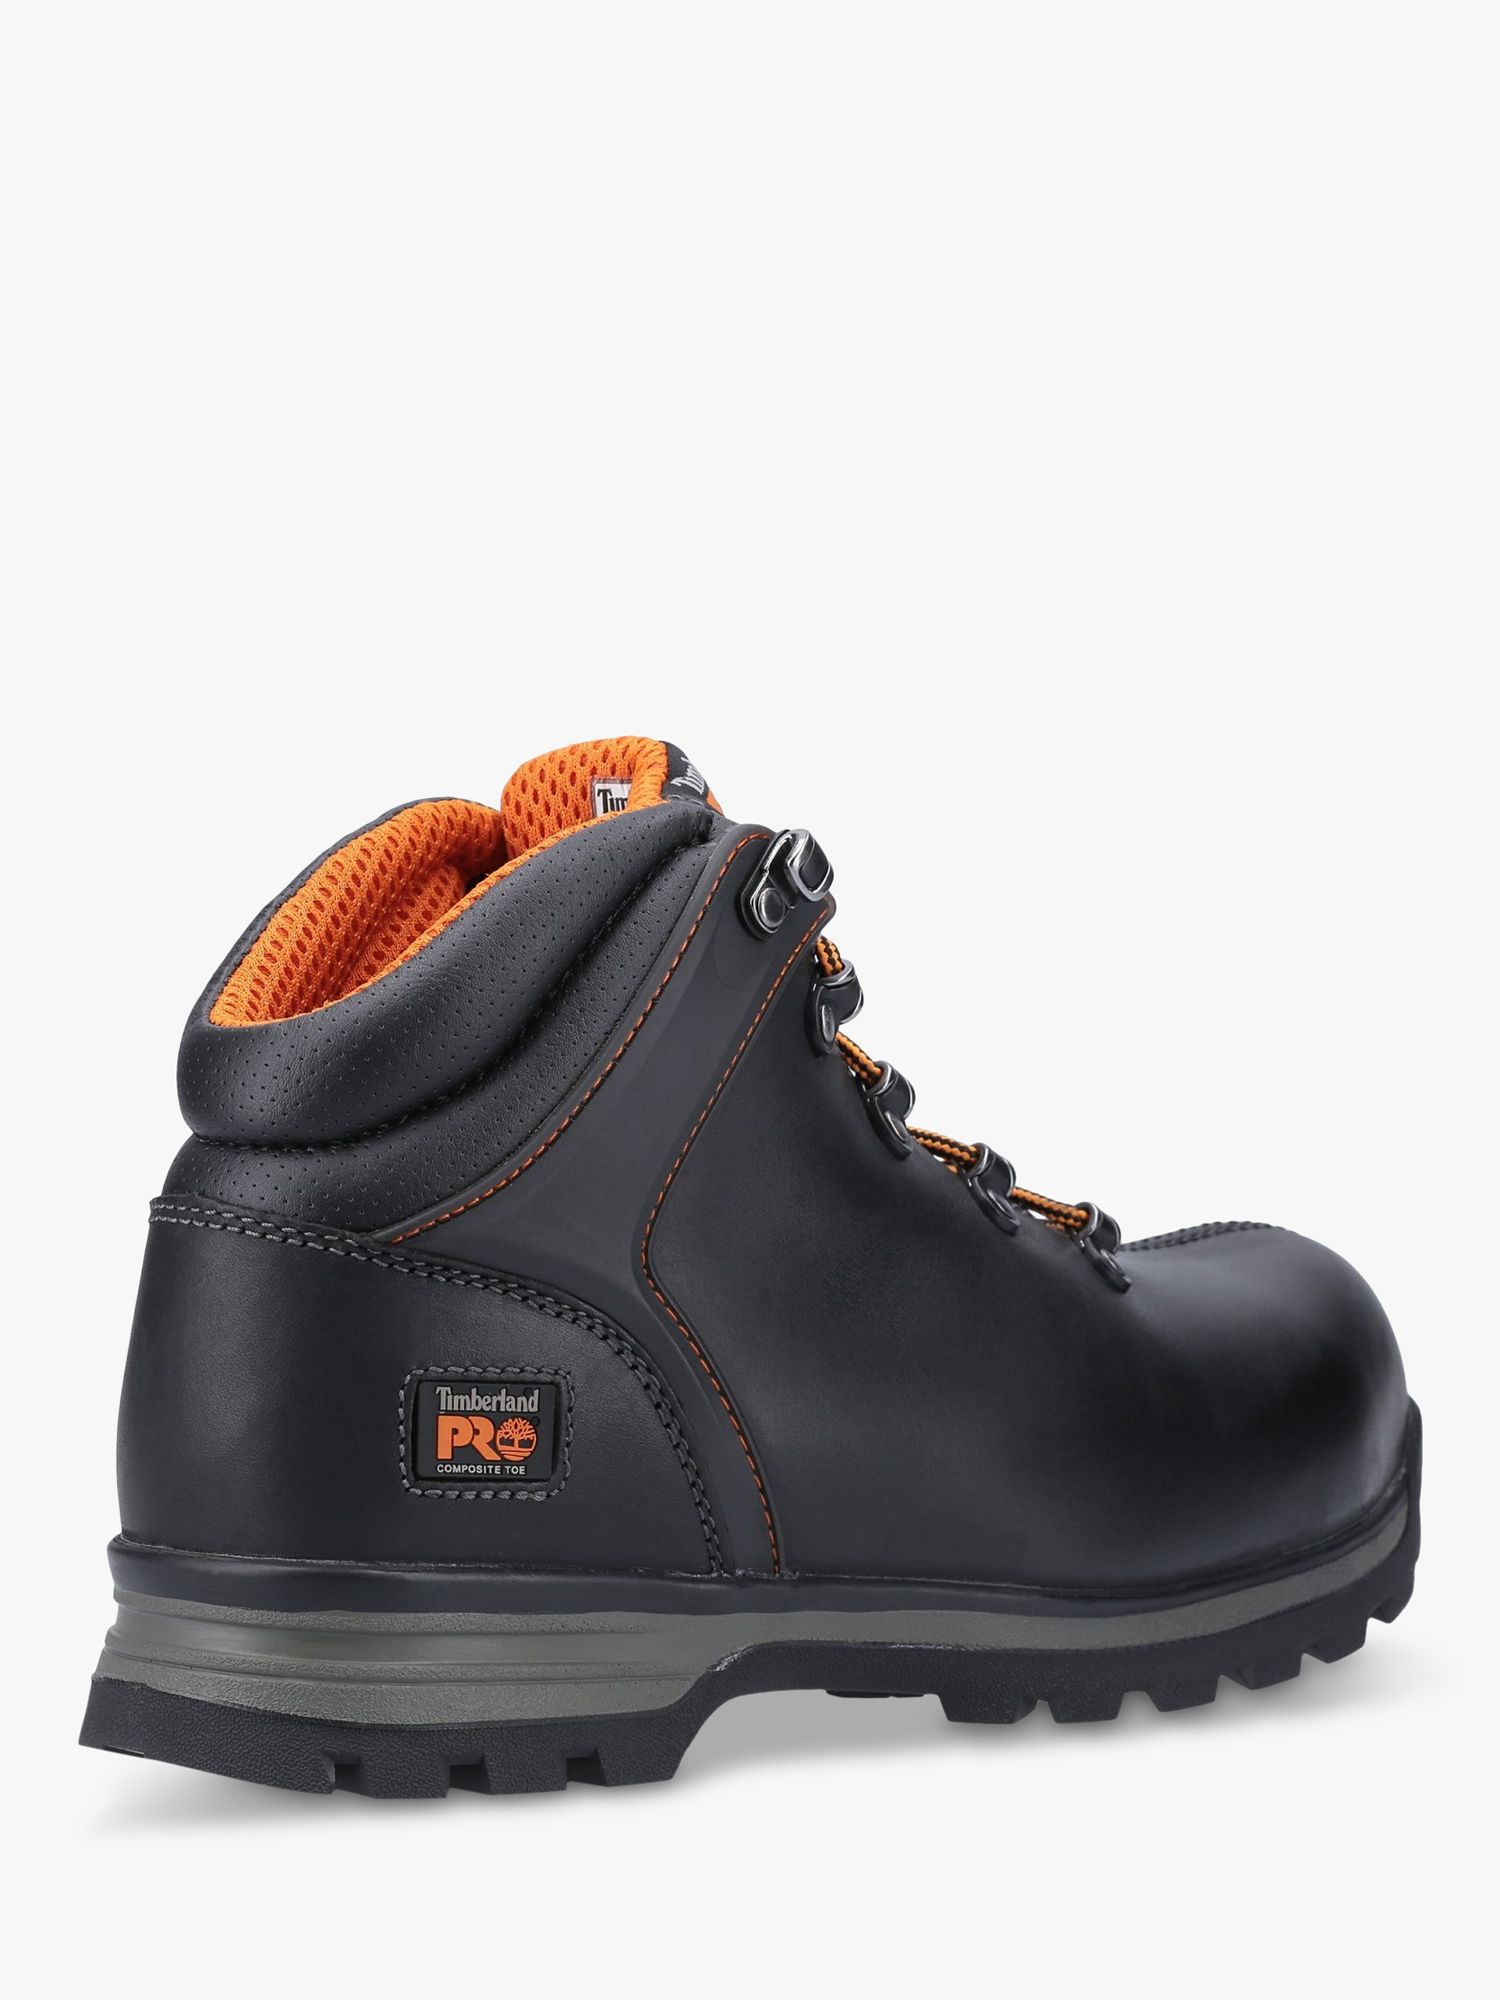 Кожаные рабочие ботинки Timberland Pro Splitrock XT с композитным носком,черные – купить по выгодным ценам с доставкой из-за рубежа через сервис«CDEK.Shopping»